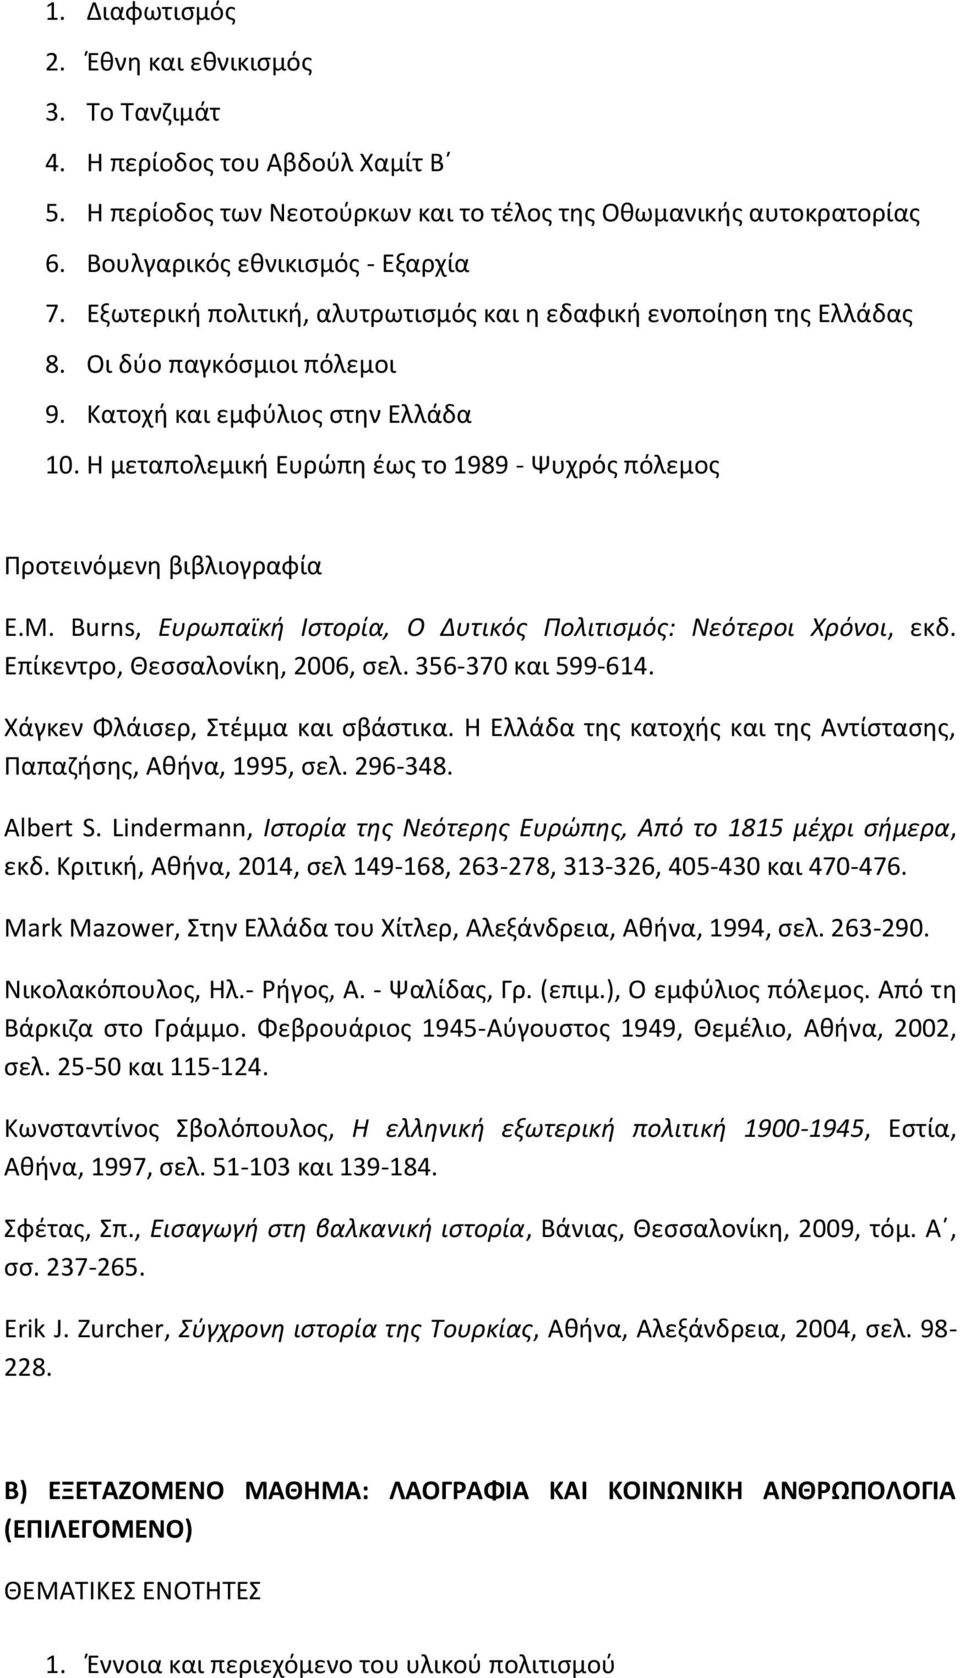 Η μεταπολεμική Ευρώπη έως το 1989 - Ψυχρός πόλεμος Προτεινόμενη βιβλιογραφία E.M. Burns, Ευρωπαϊκή Ιστορία, Ο Δυτικός Πολιτισμός: Νεότεροι Χρόνοι, εκδ. Επίκεντρο, Θεσσαλονίκη, 2006, σελ.